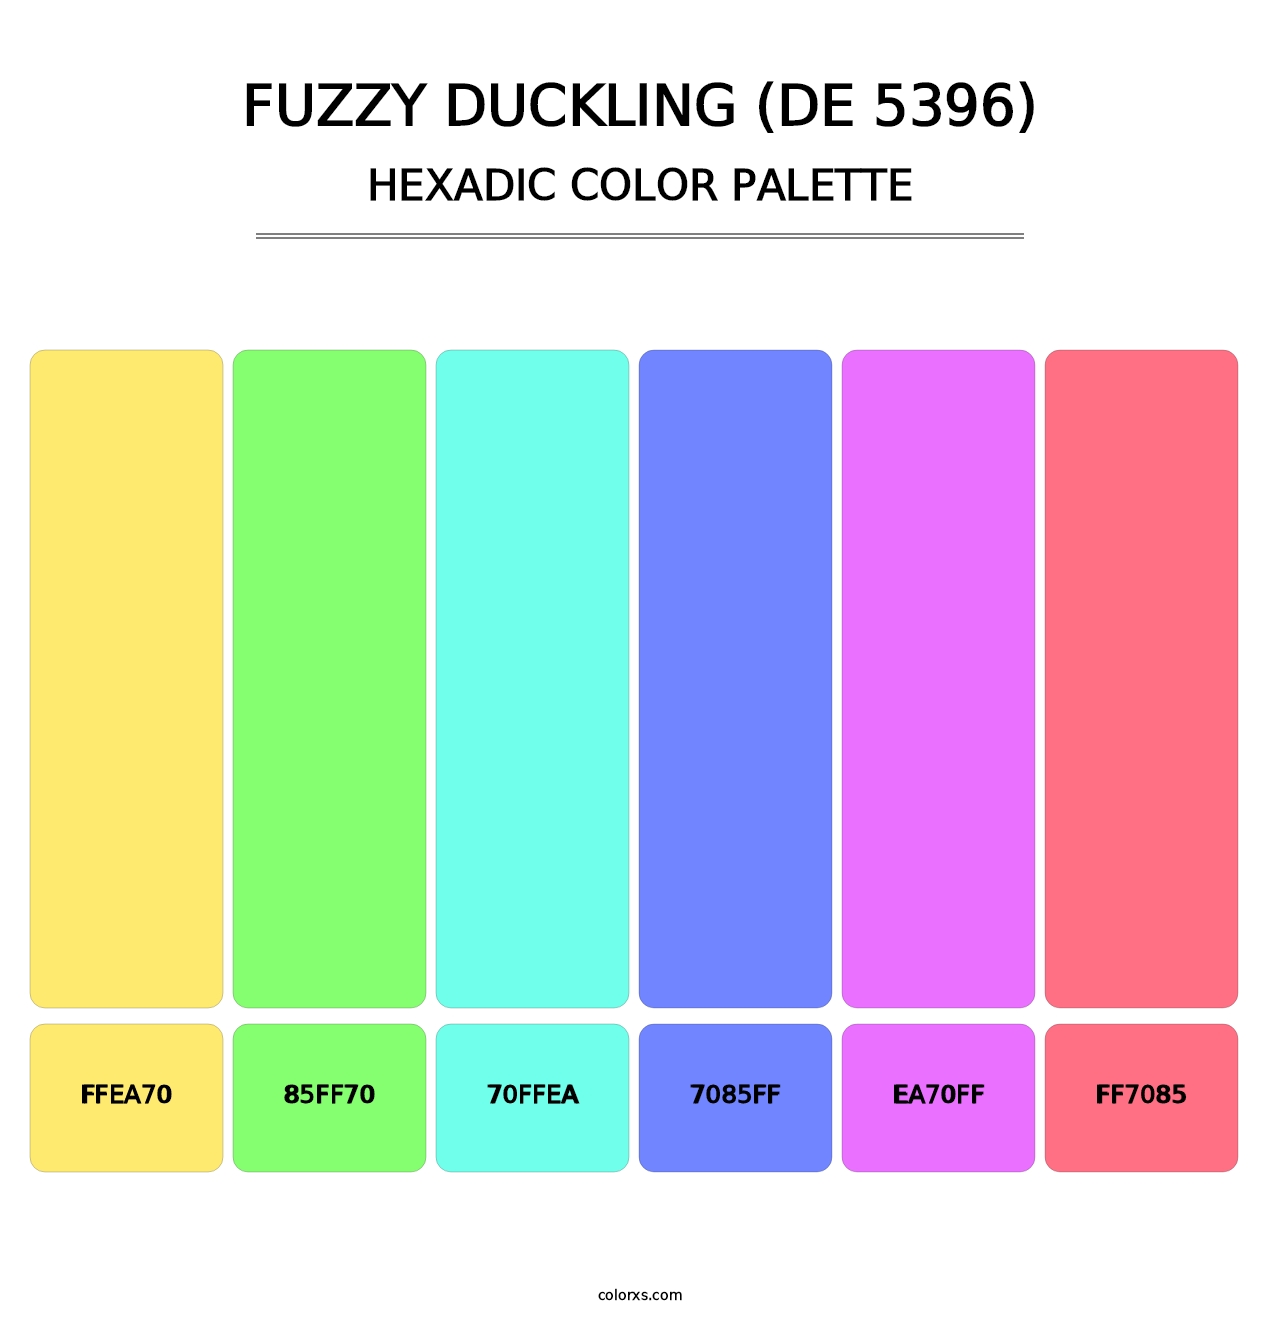 Fuzzy Duckling (DE 5396) - Hexadic Color Palette